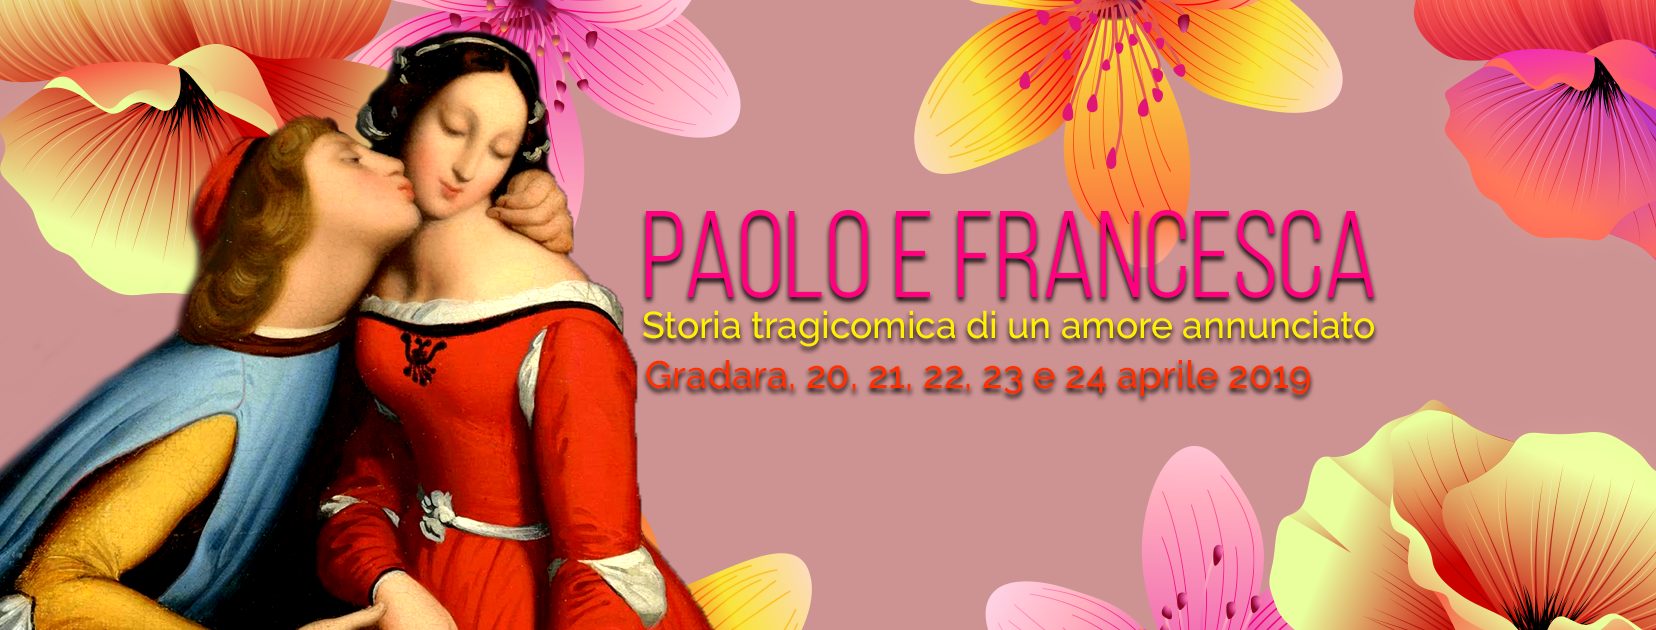 Paolo e Francesca - Gradara